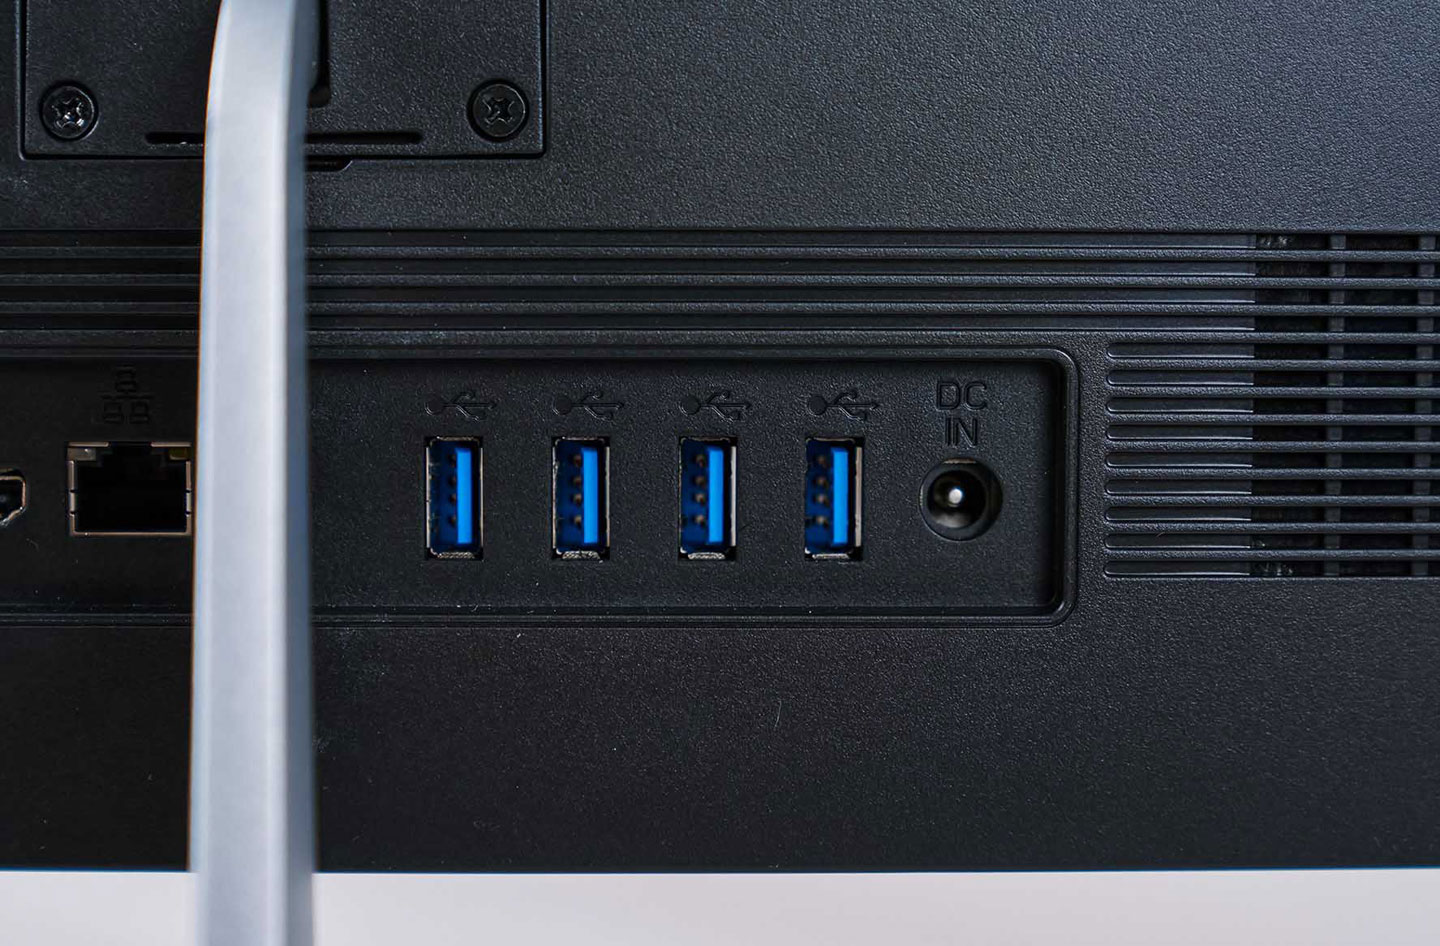 靠近支架右側配置了 4 組 USB 3.2 Gen2 A 埠，相較於一般常見的 Gen1 規格傳輸速度是 2 倍的 10 Gbps，另外也有電源供應器接口。